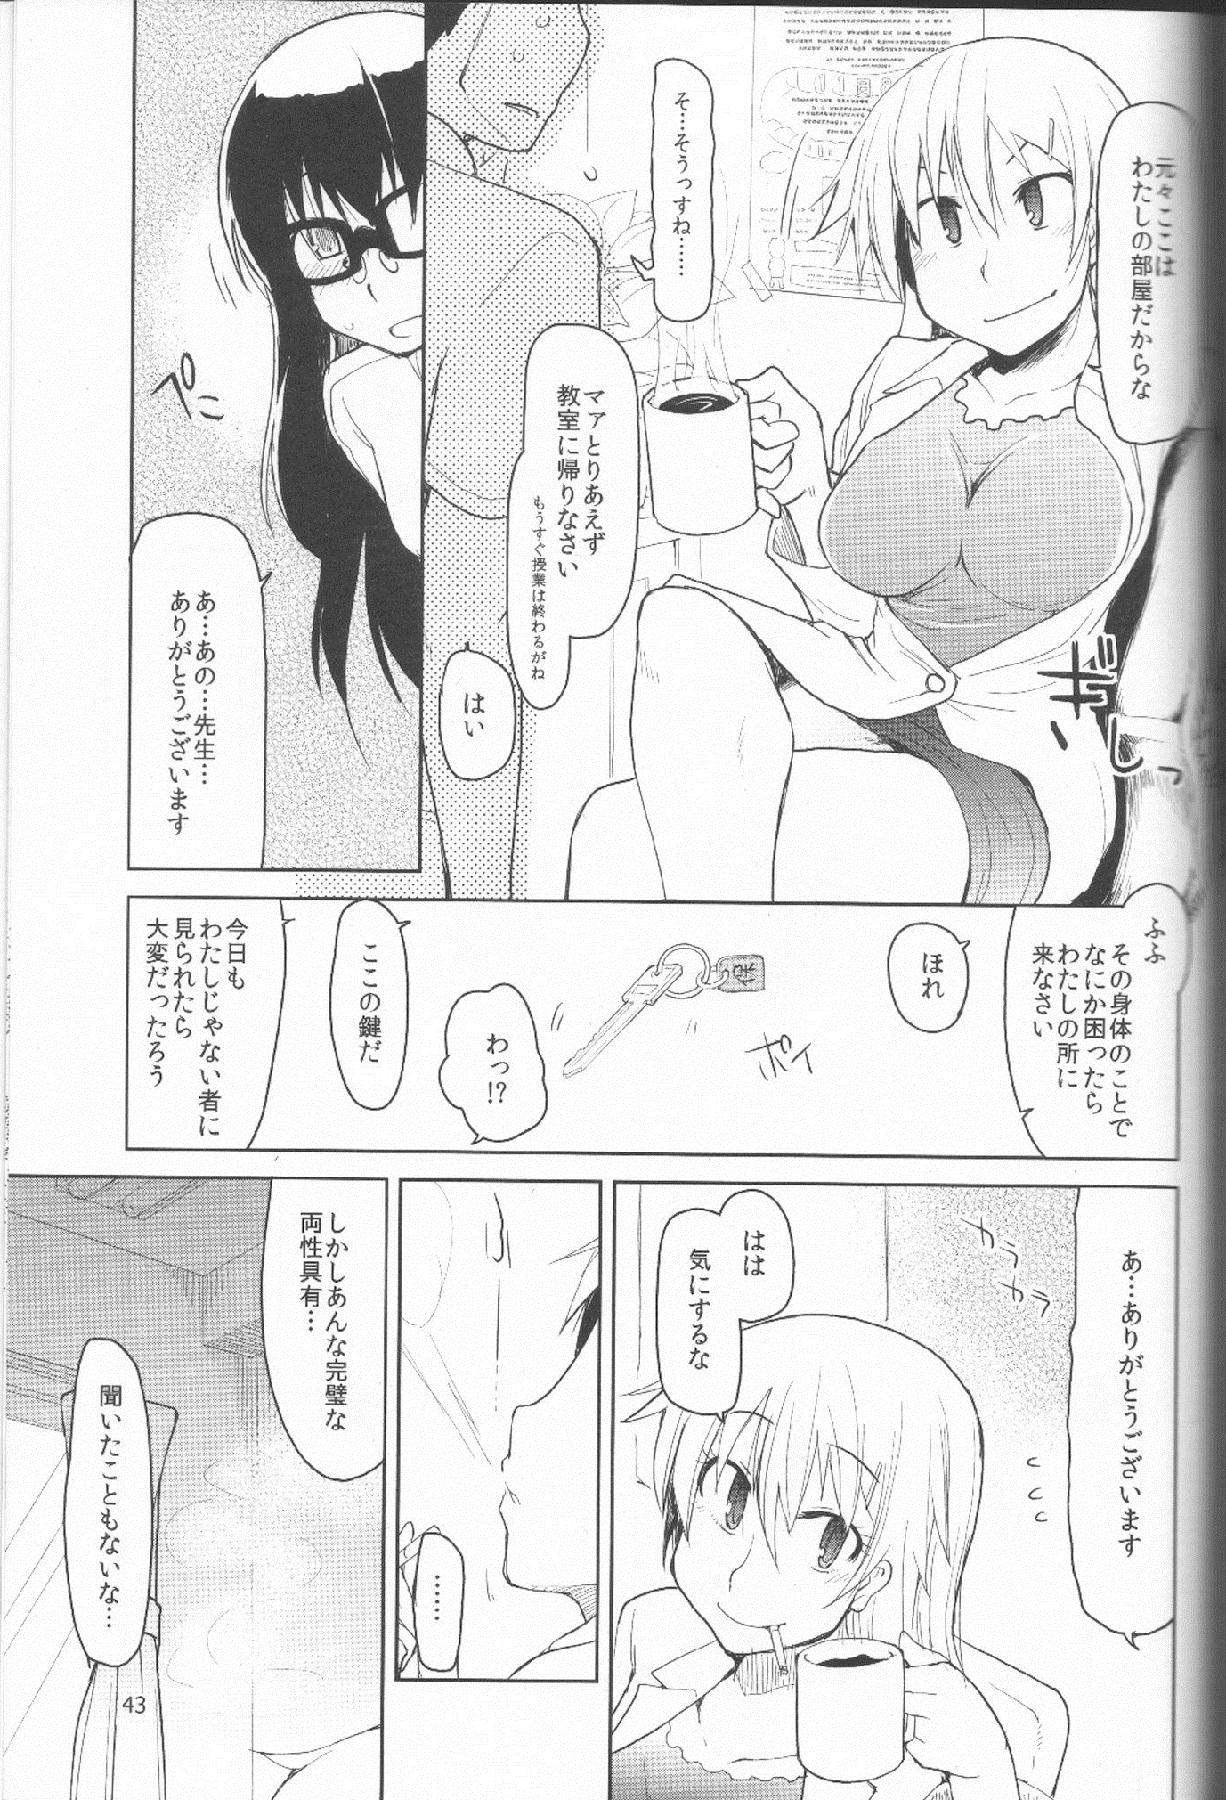 Natsuzuka san no Himitsu. Vol.1 Deai Hen 43